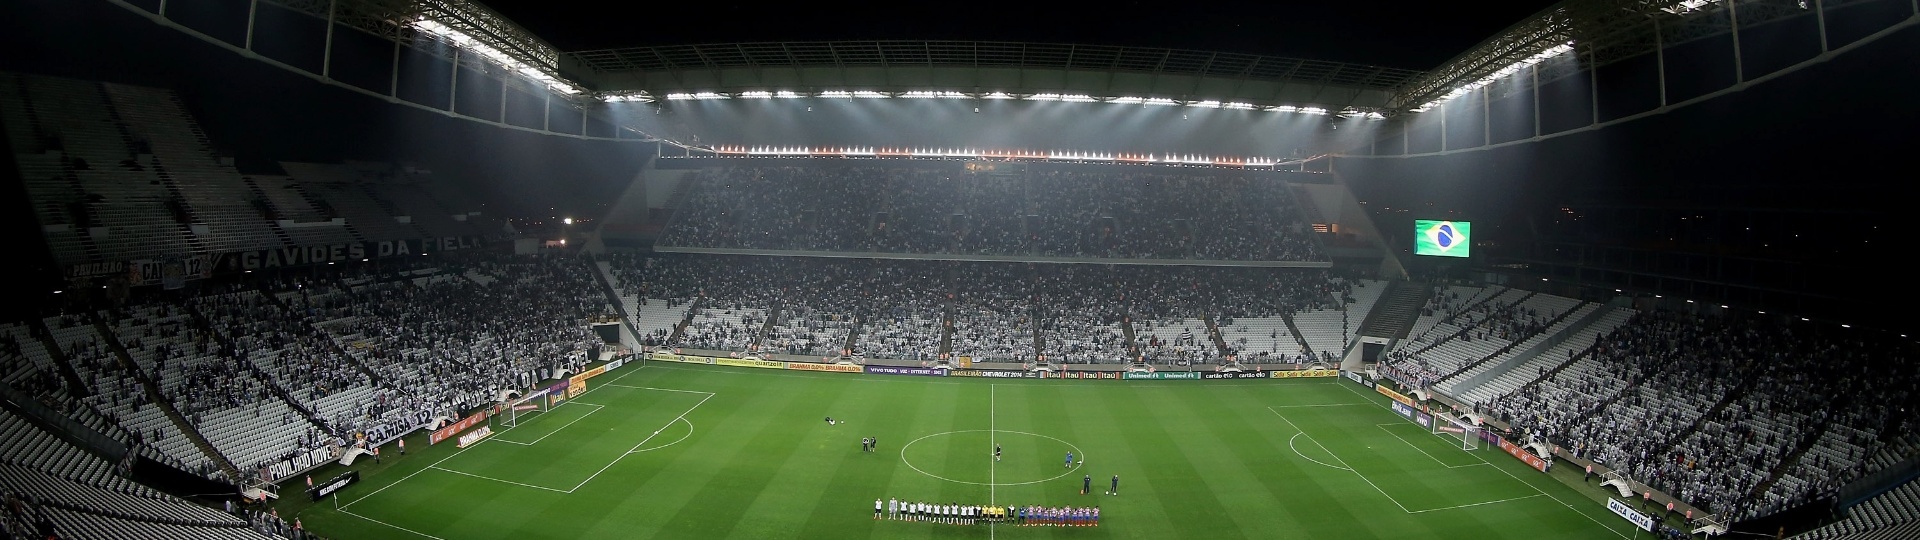 16.ago.2014 - Em noite chuvosa em São Paulo, Itaquerão recebe público razoável no jogo entre Corinthians e Bahia